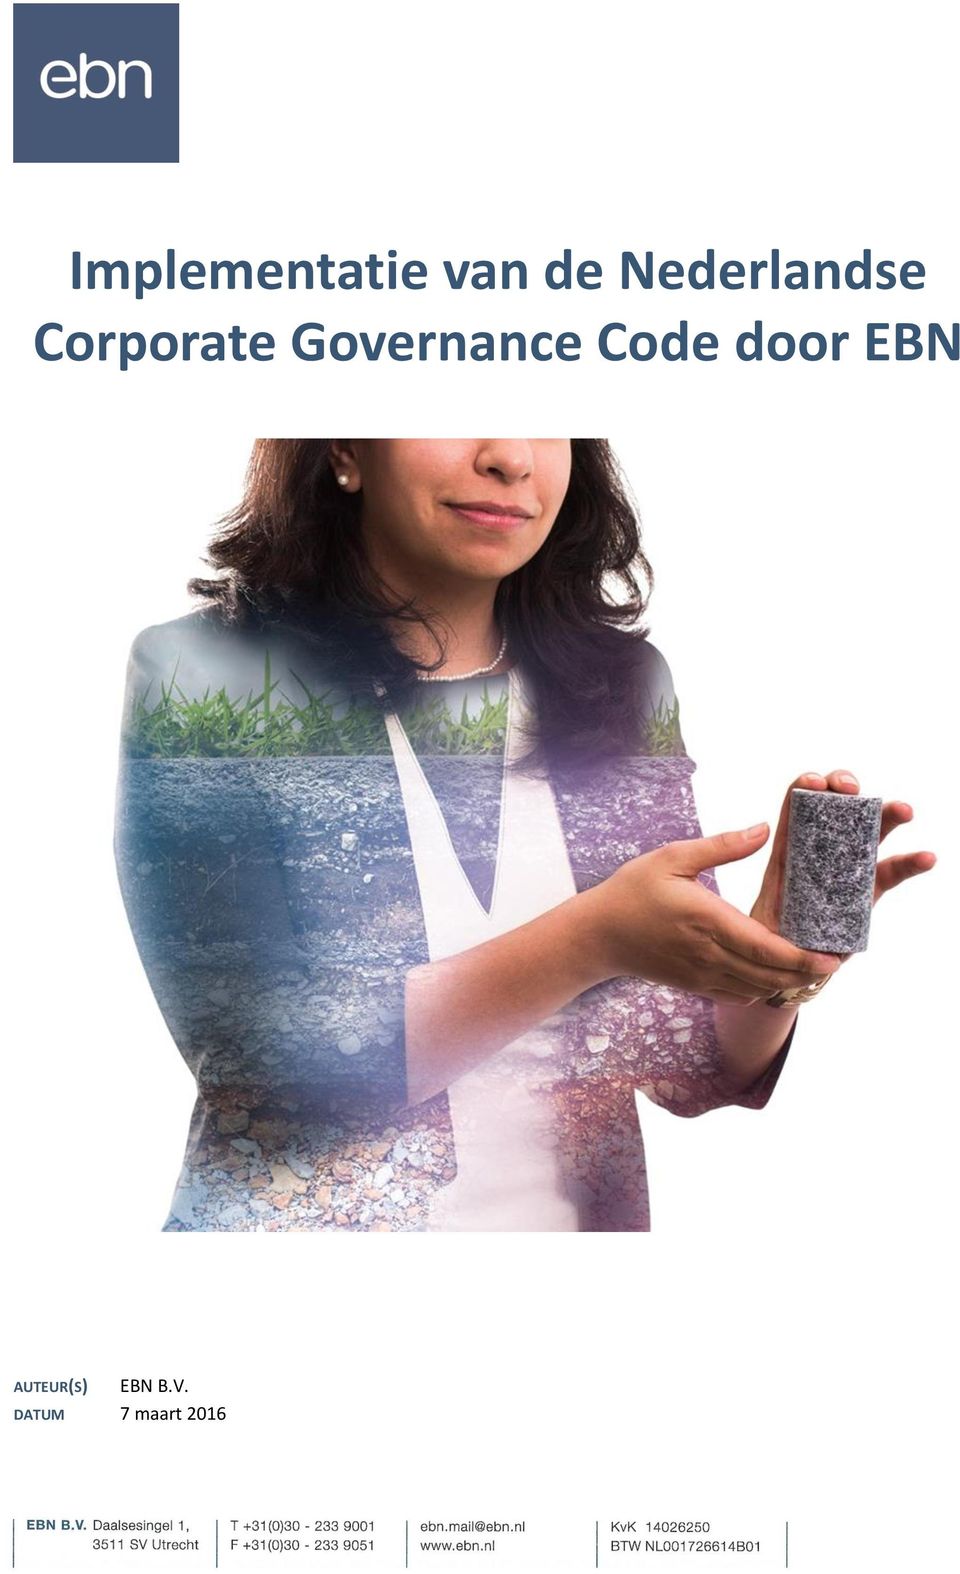 Governance Code door EBN